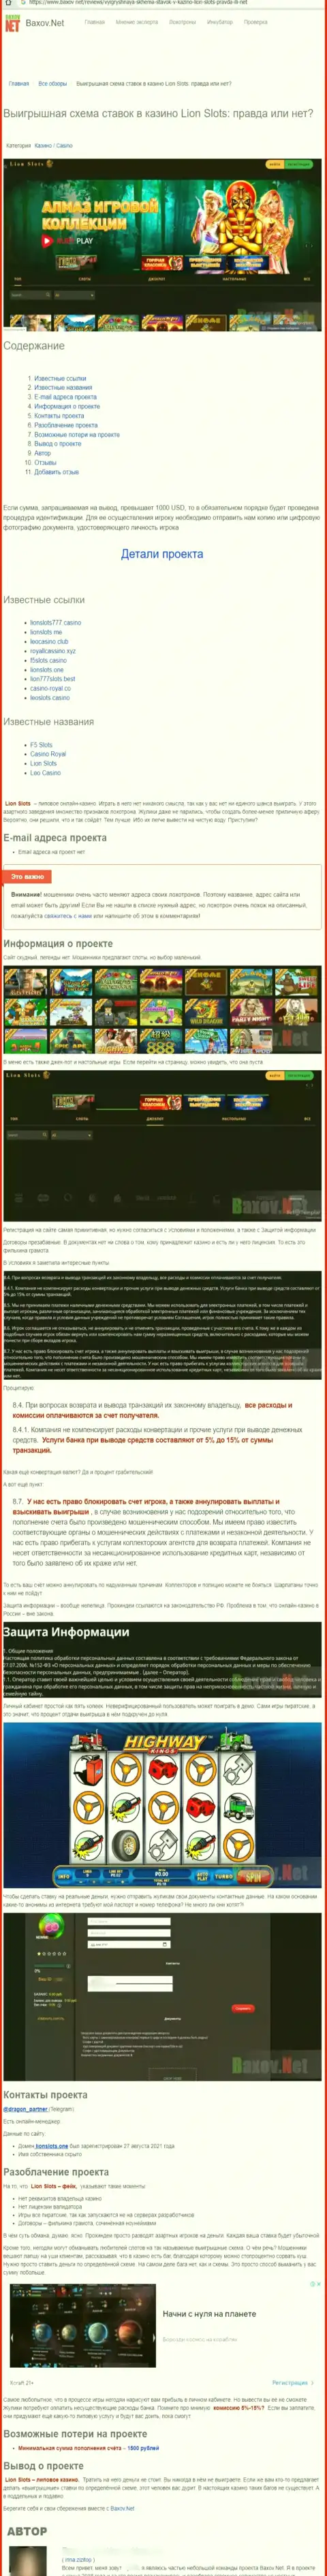 RoyallCassino Xyz лохотронят и не отдают вложения клиентов (обзорная статья противозаконных деяний компании)